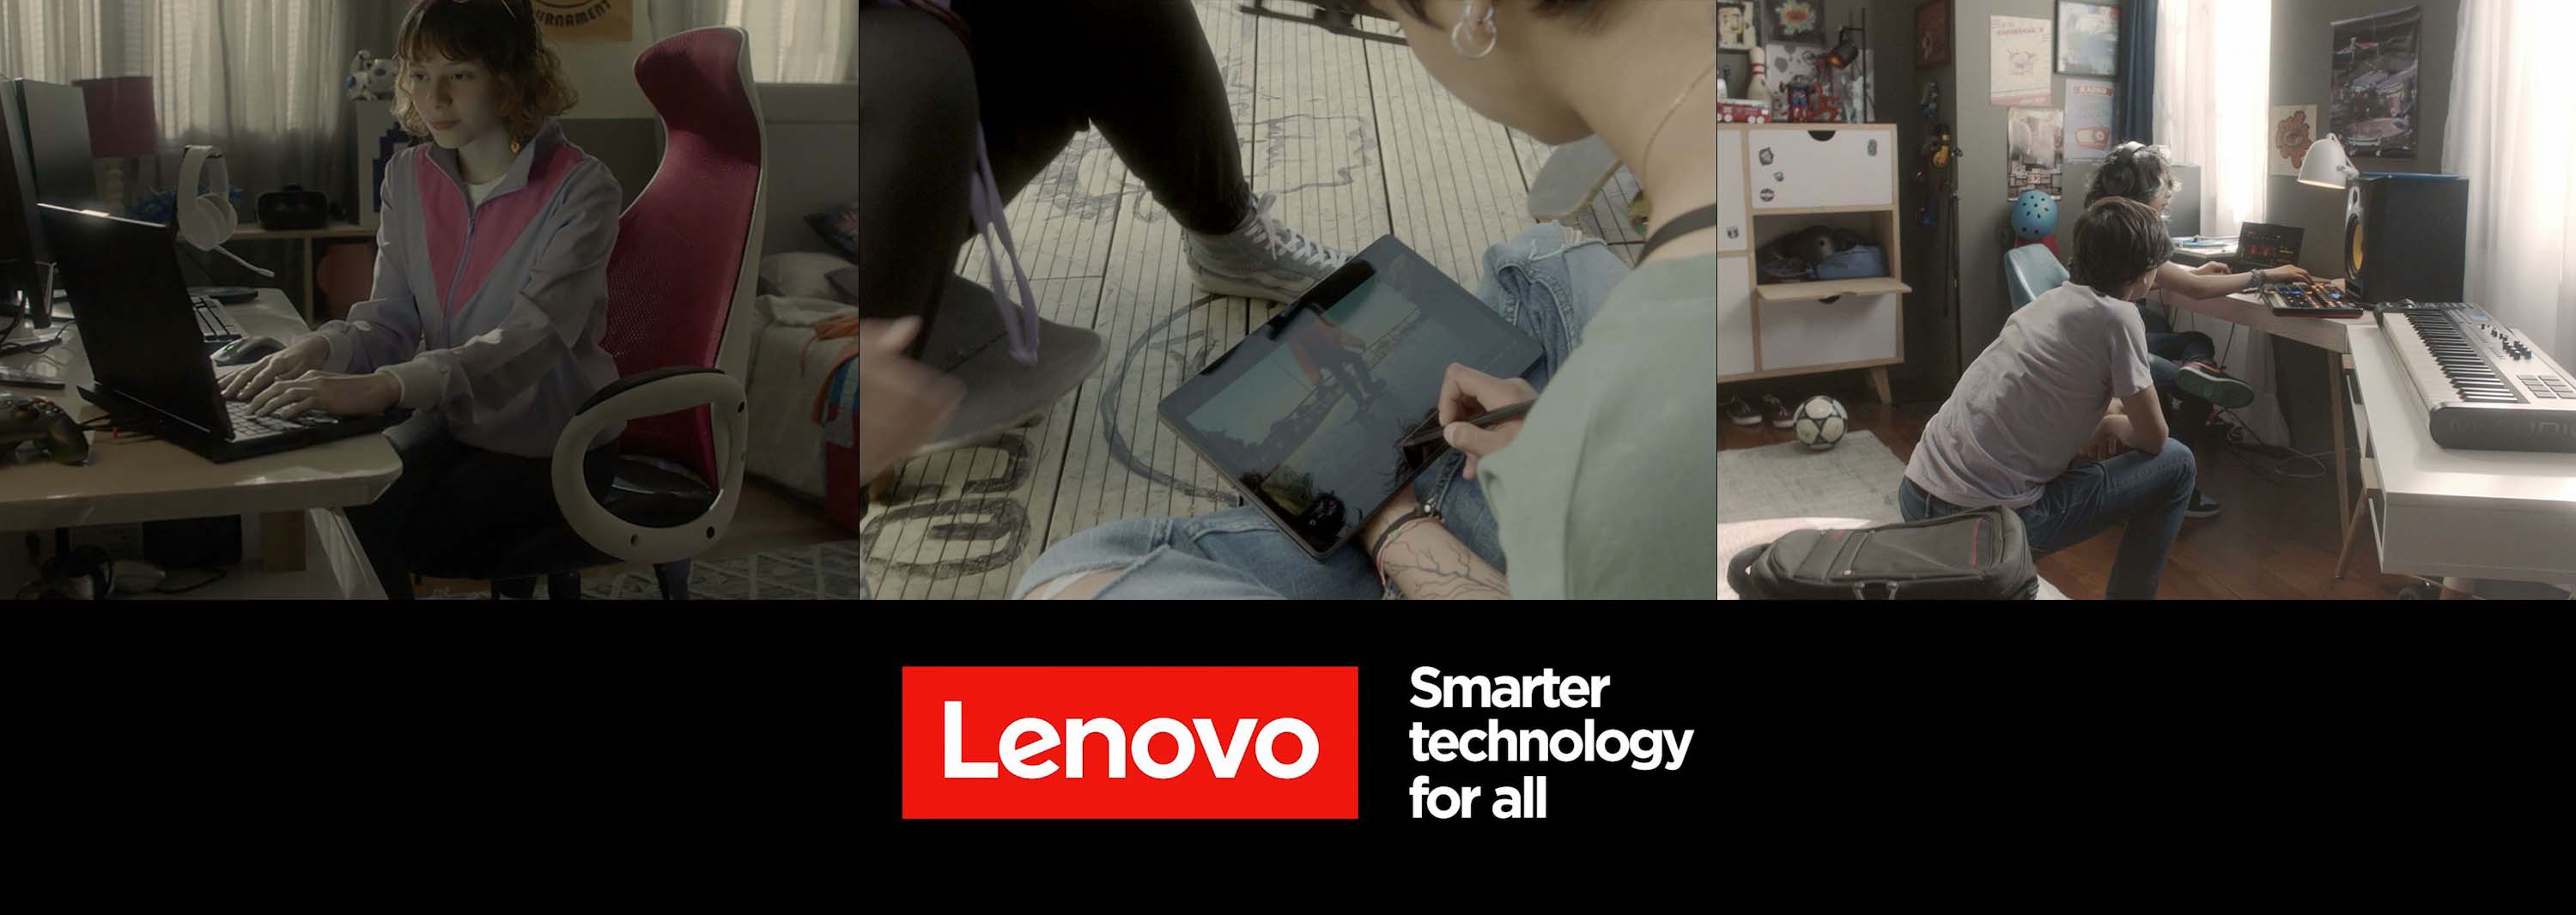 La tecnología puede abrir un mundo infinito de posibilidades para las nuevas generaciones: Lenovo  